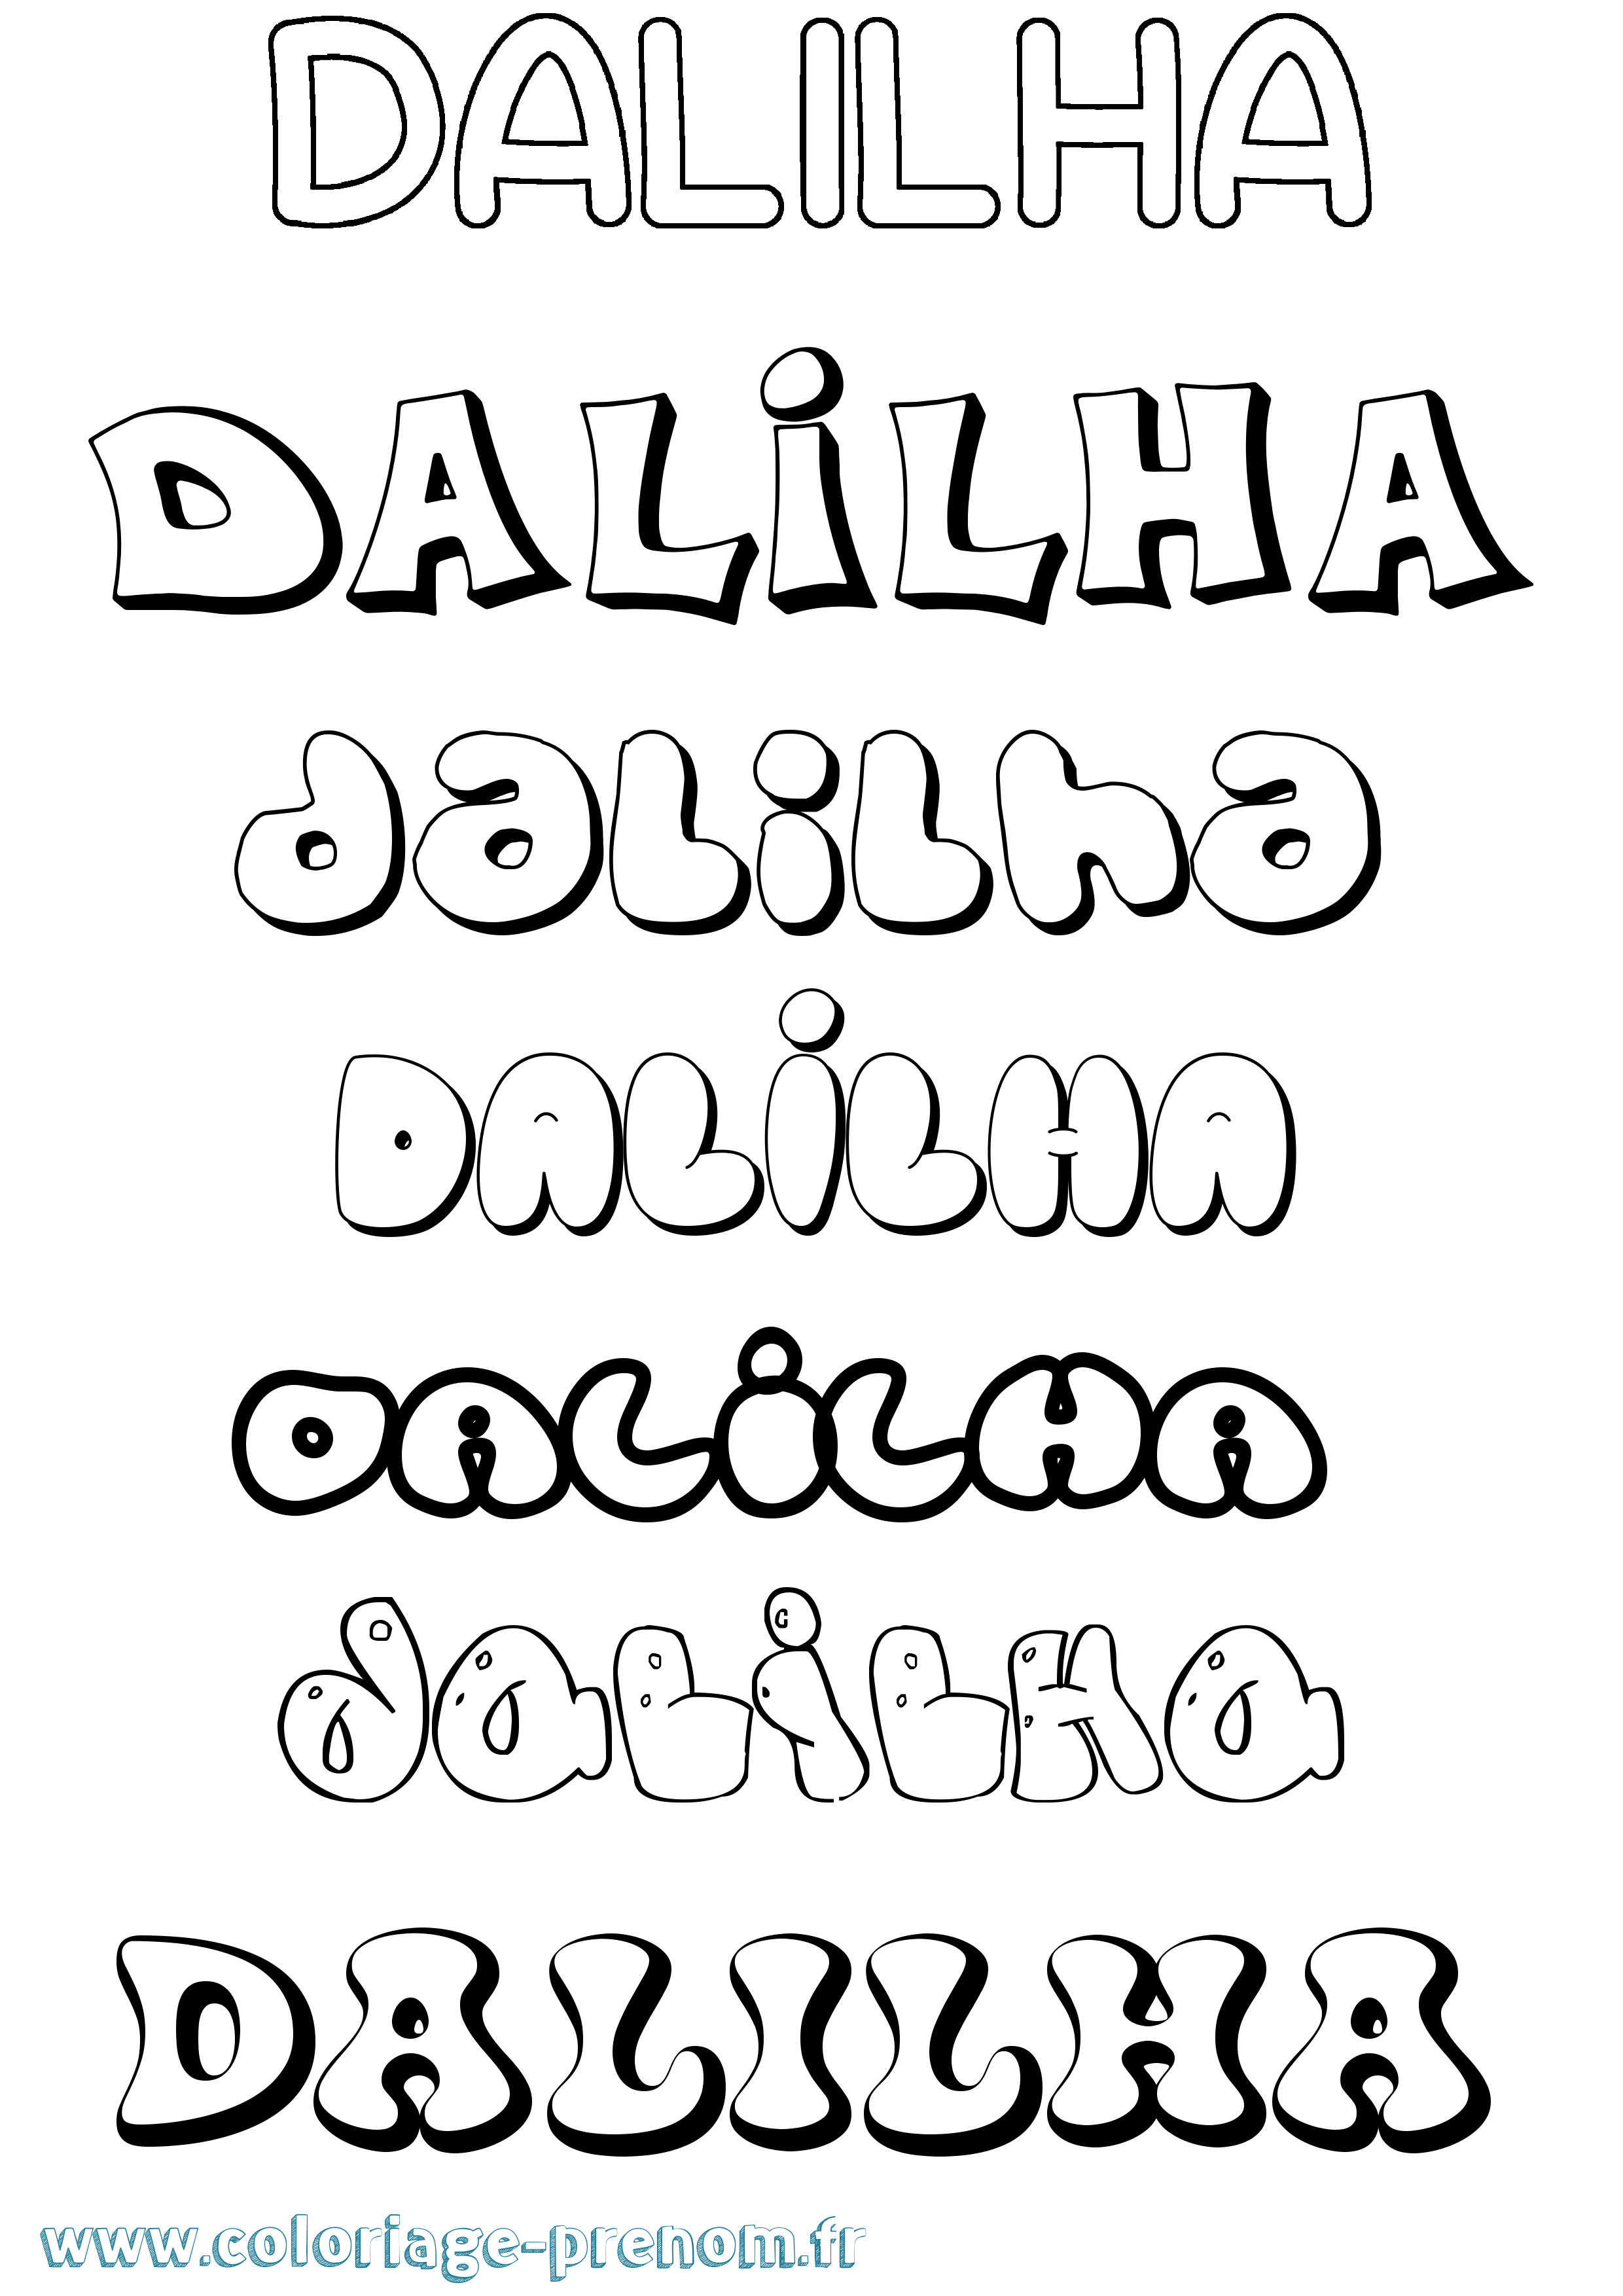 Coloriage prénom Dalilha Bubble